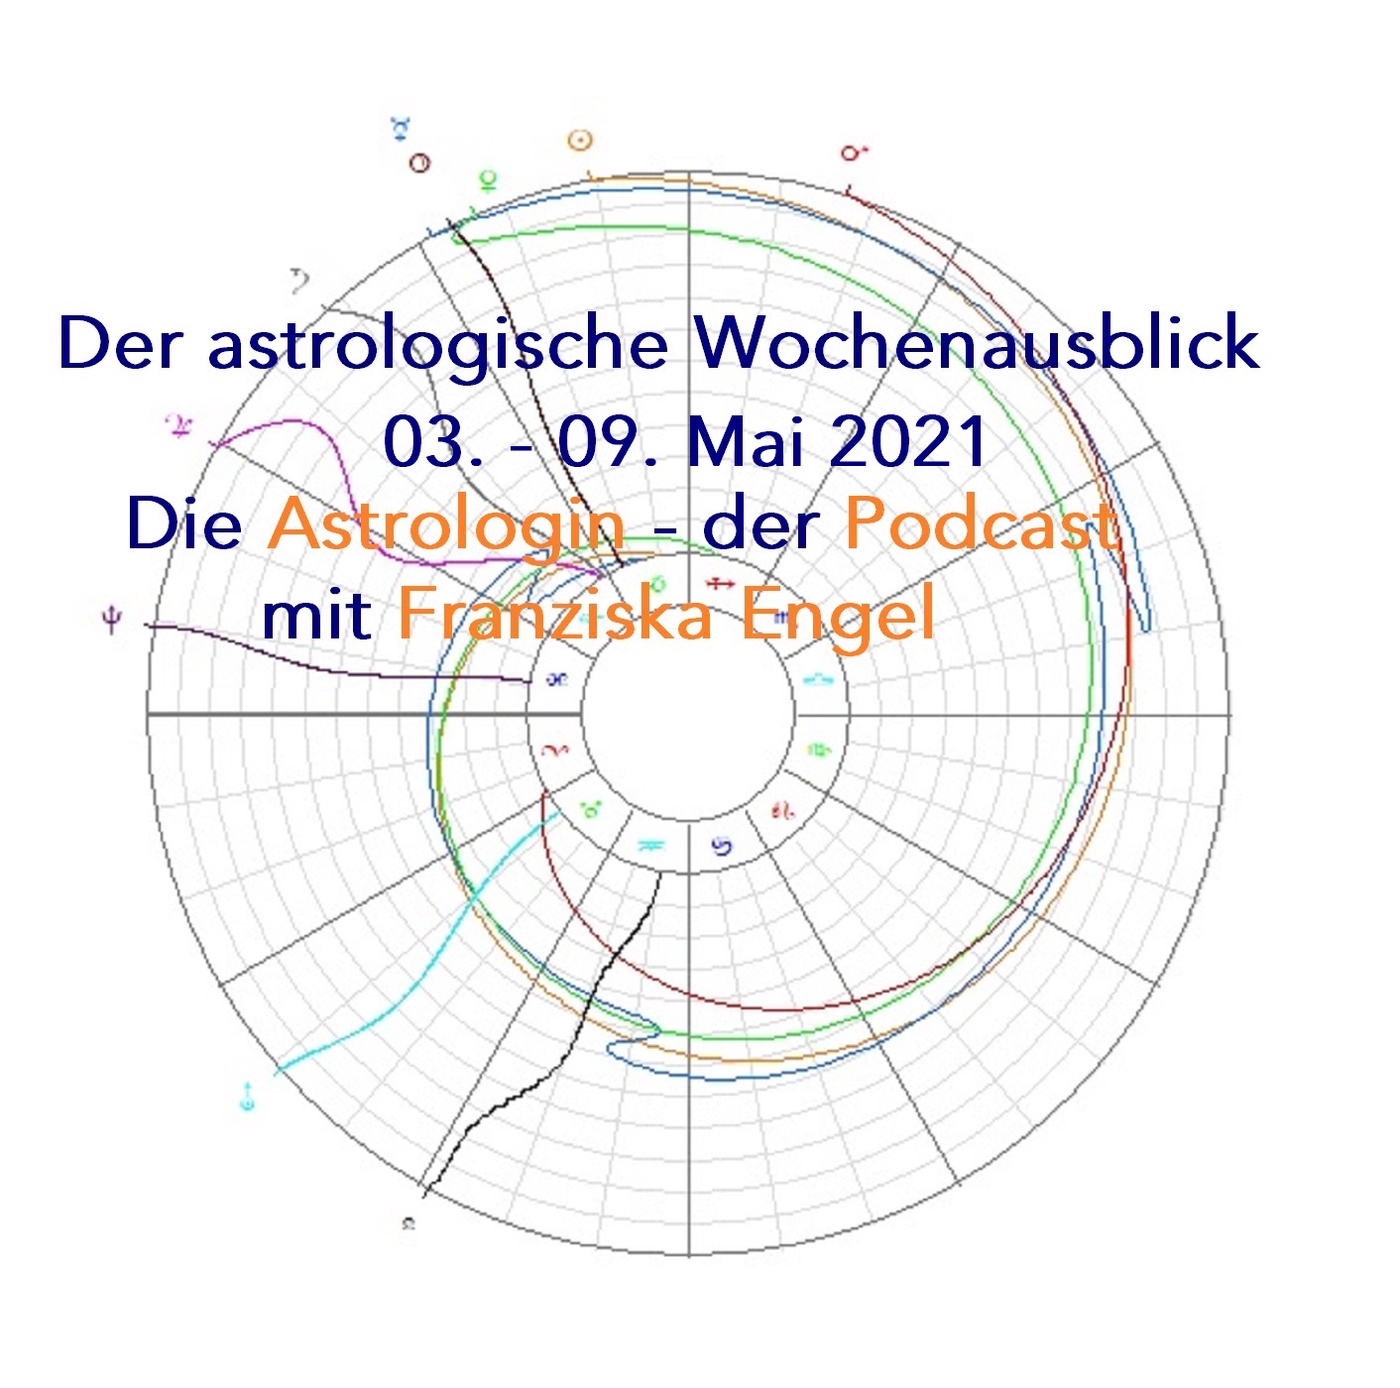 Astrologischer Wochenausblick 03. - 09. Mai 2021